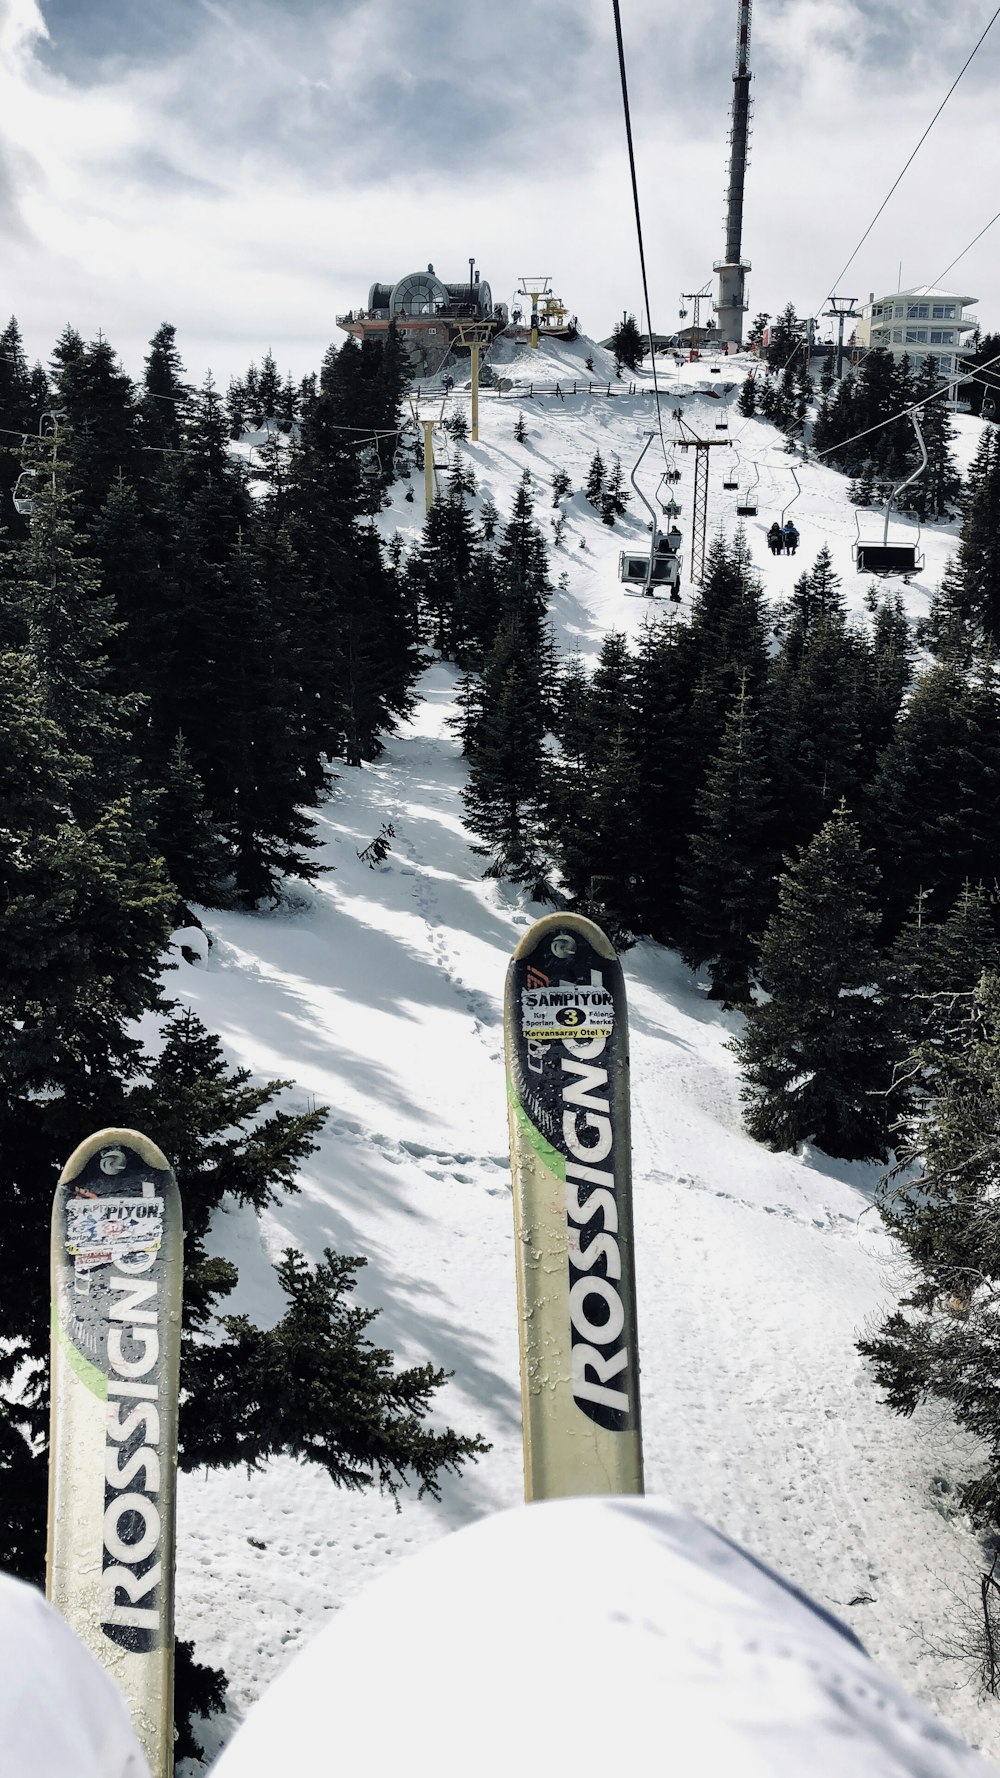 Persona che cavalca lo snowboard giallo e nero su terreno coperto di neve durante il giorno